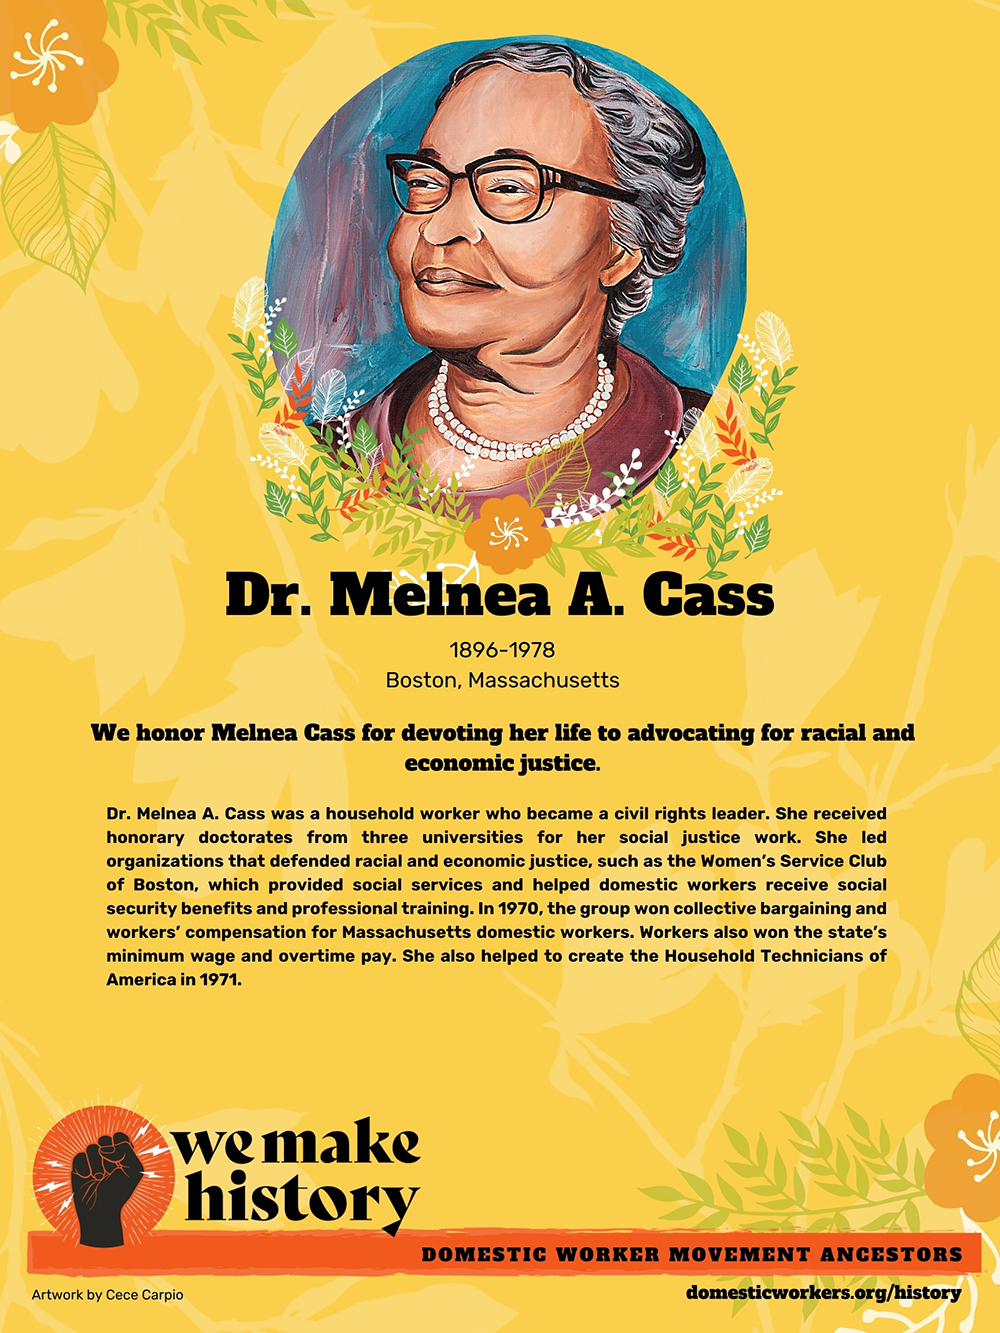 Domestic Worker Ancestors: Dr. Melnea A. Cass